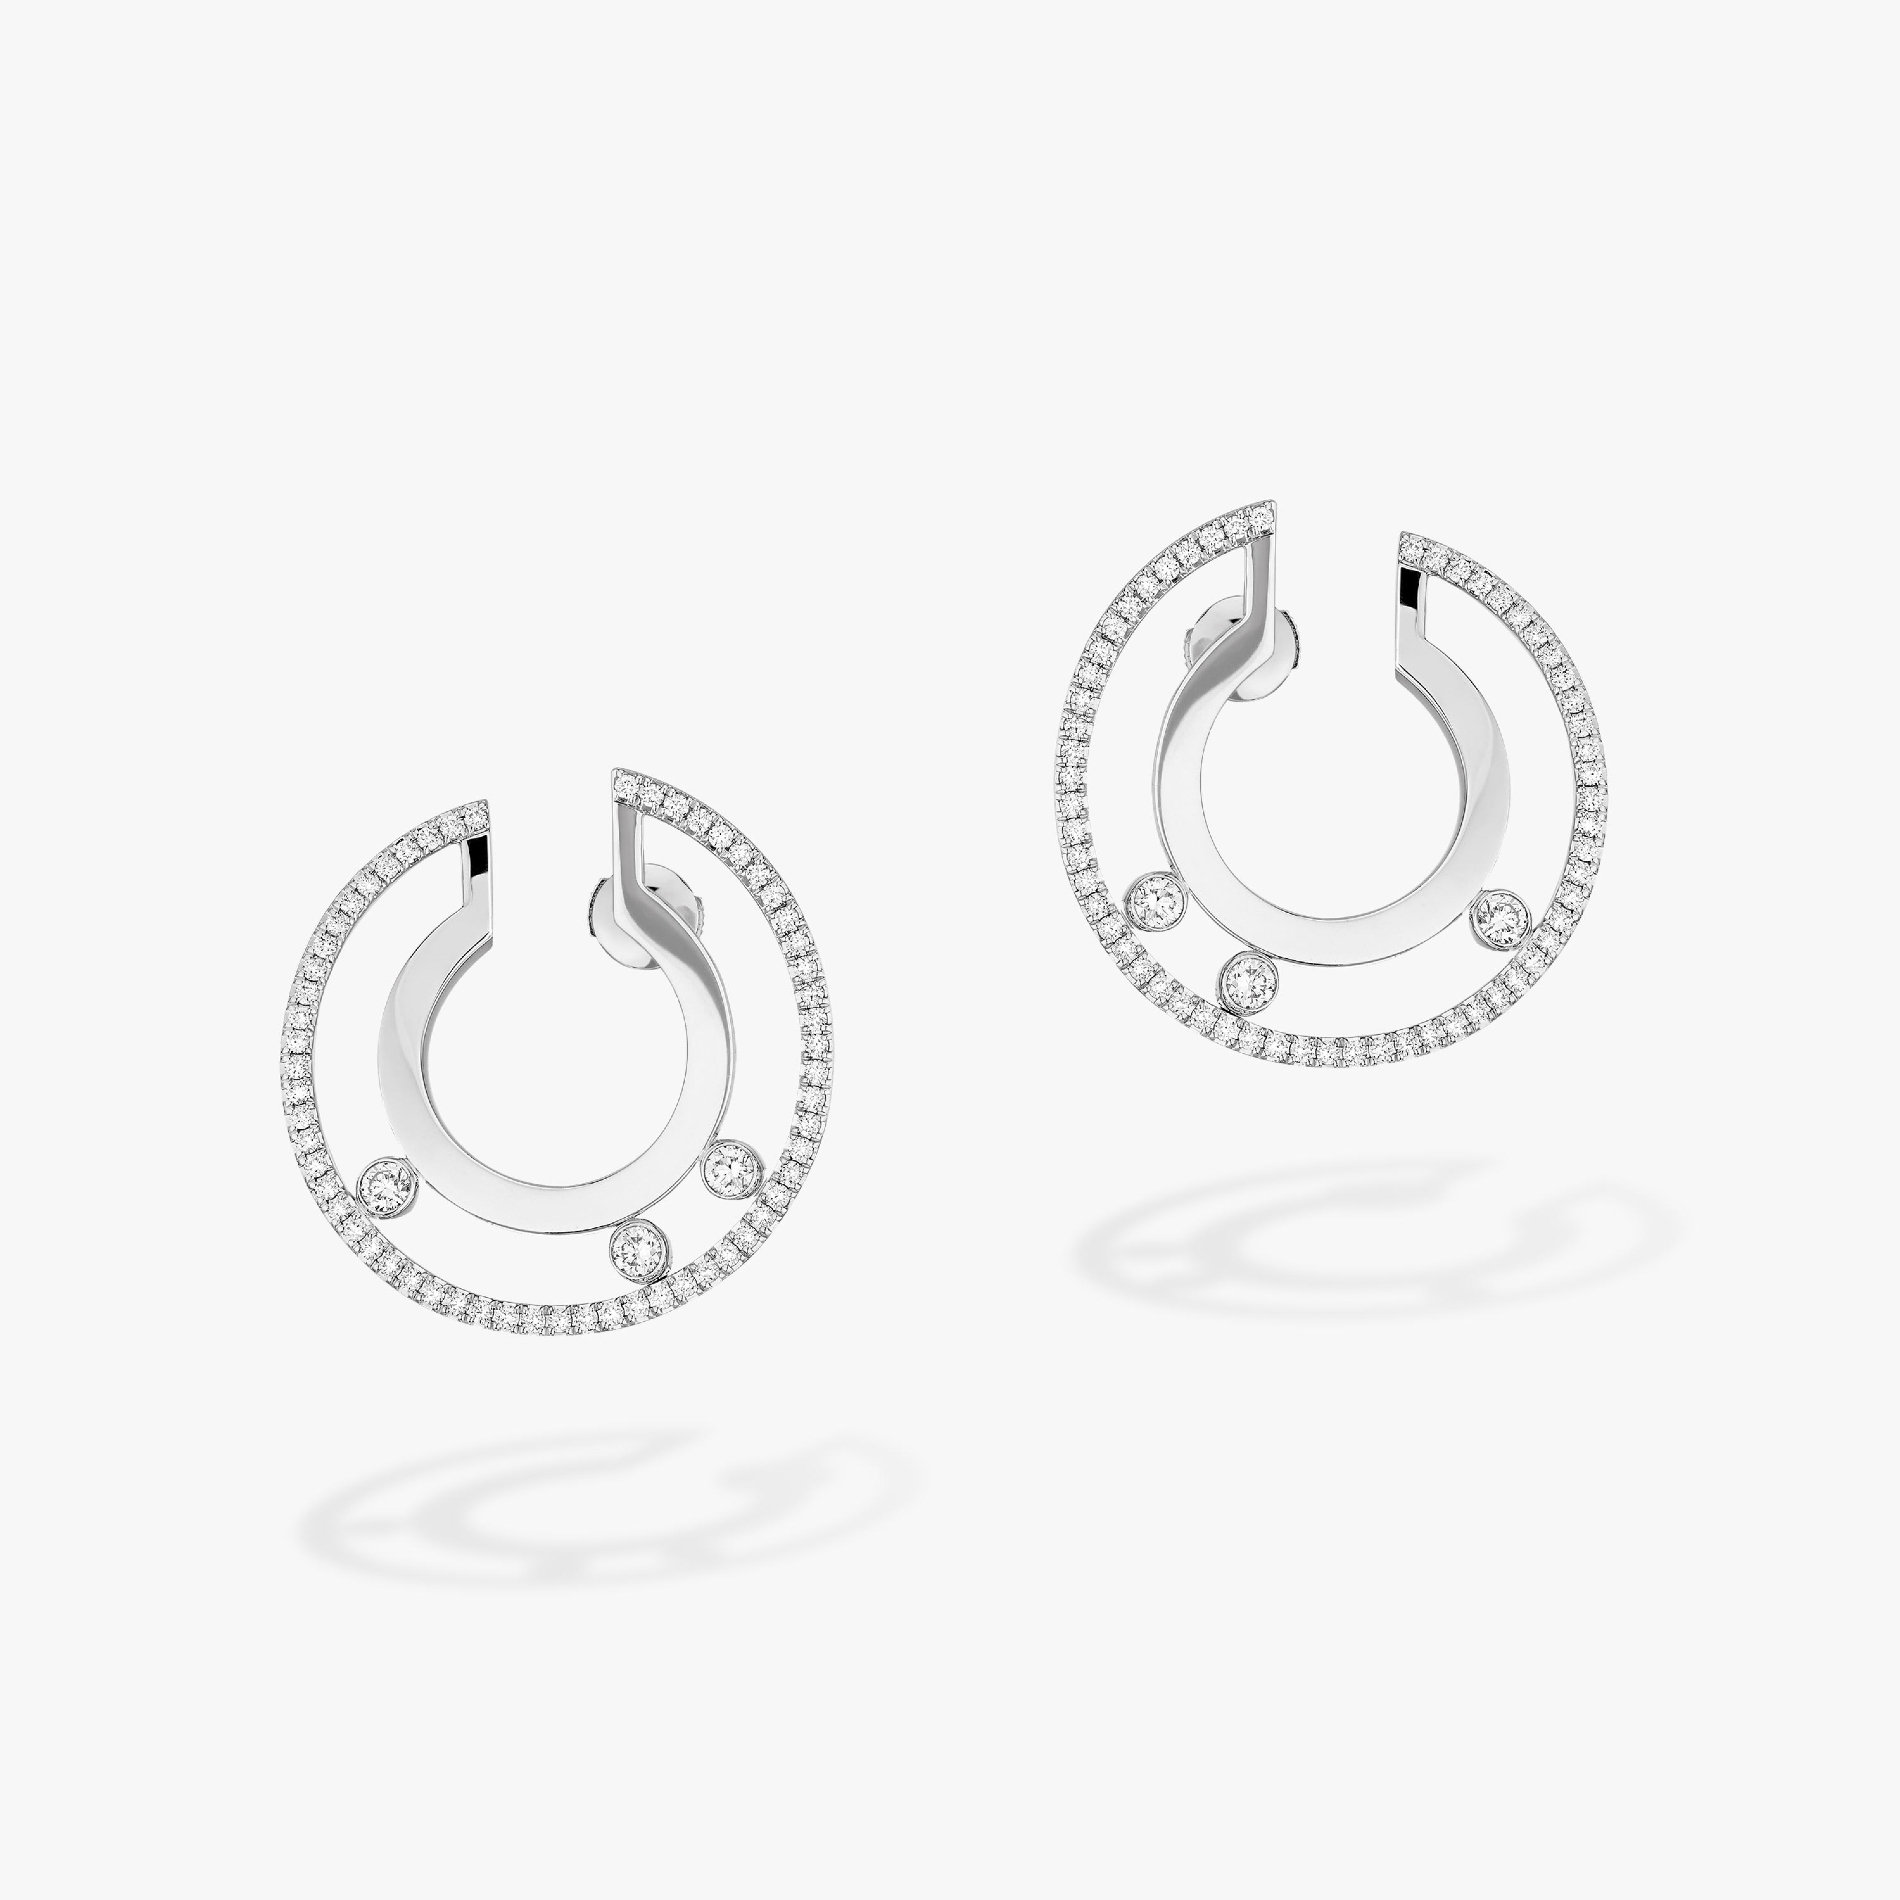 Move Romane Small Hoop White Gold For Her Diamond Earrings 06689-WG